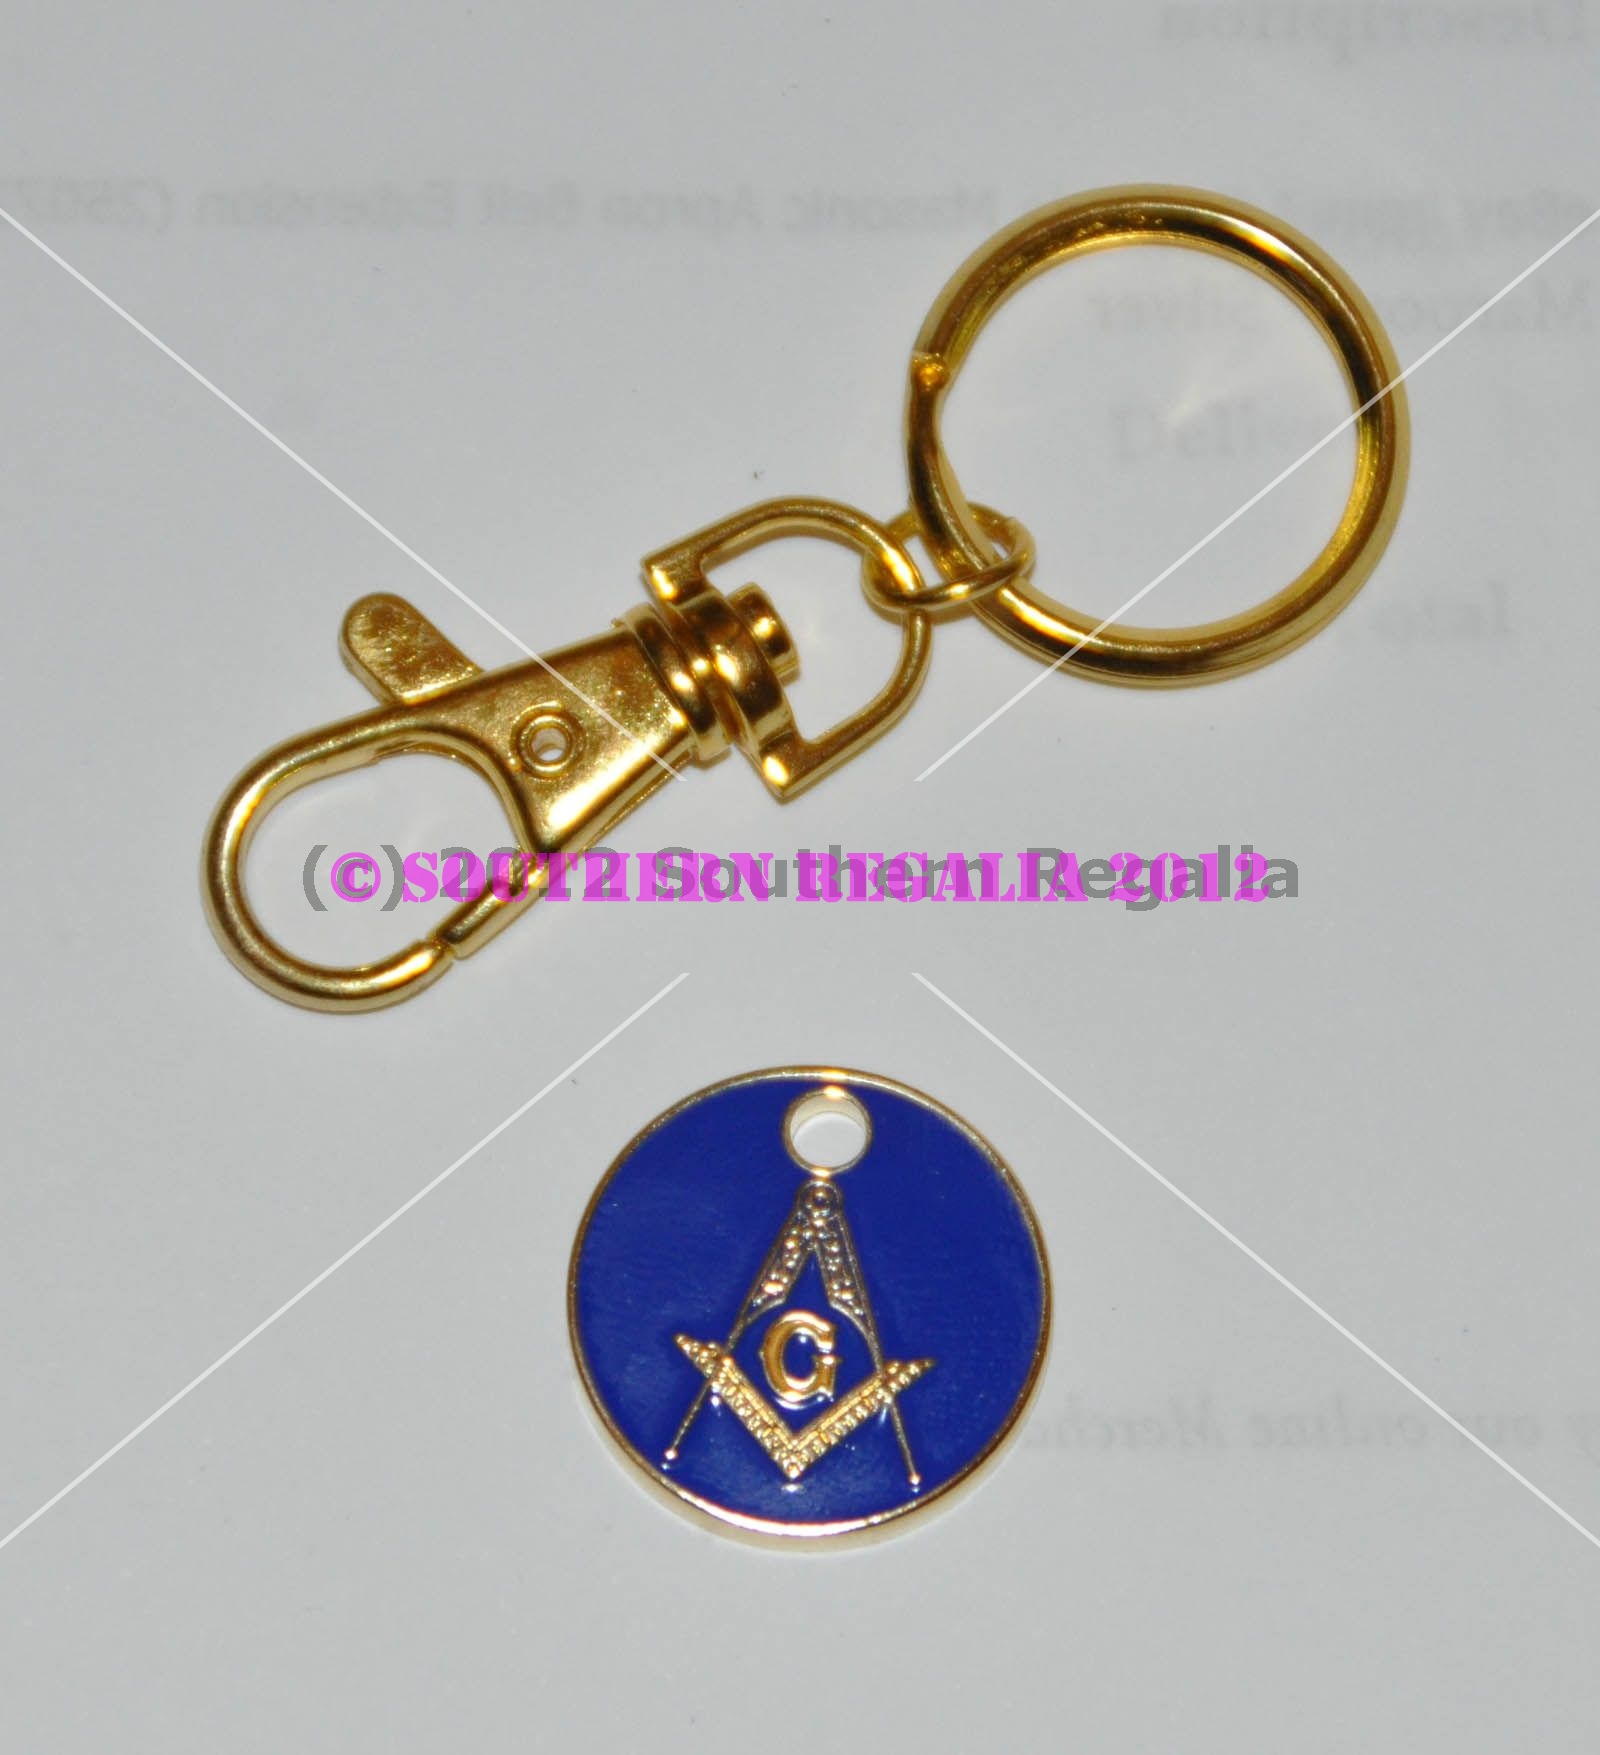 Masonic Flinstones Badge Bottle Opener Keyring Regalia Freemasons Gift 